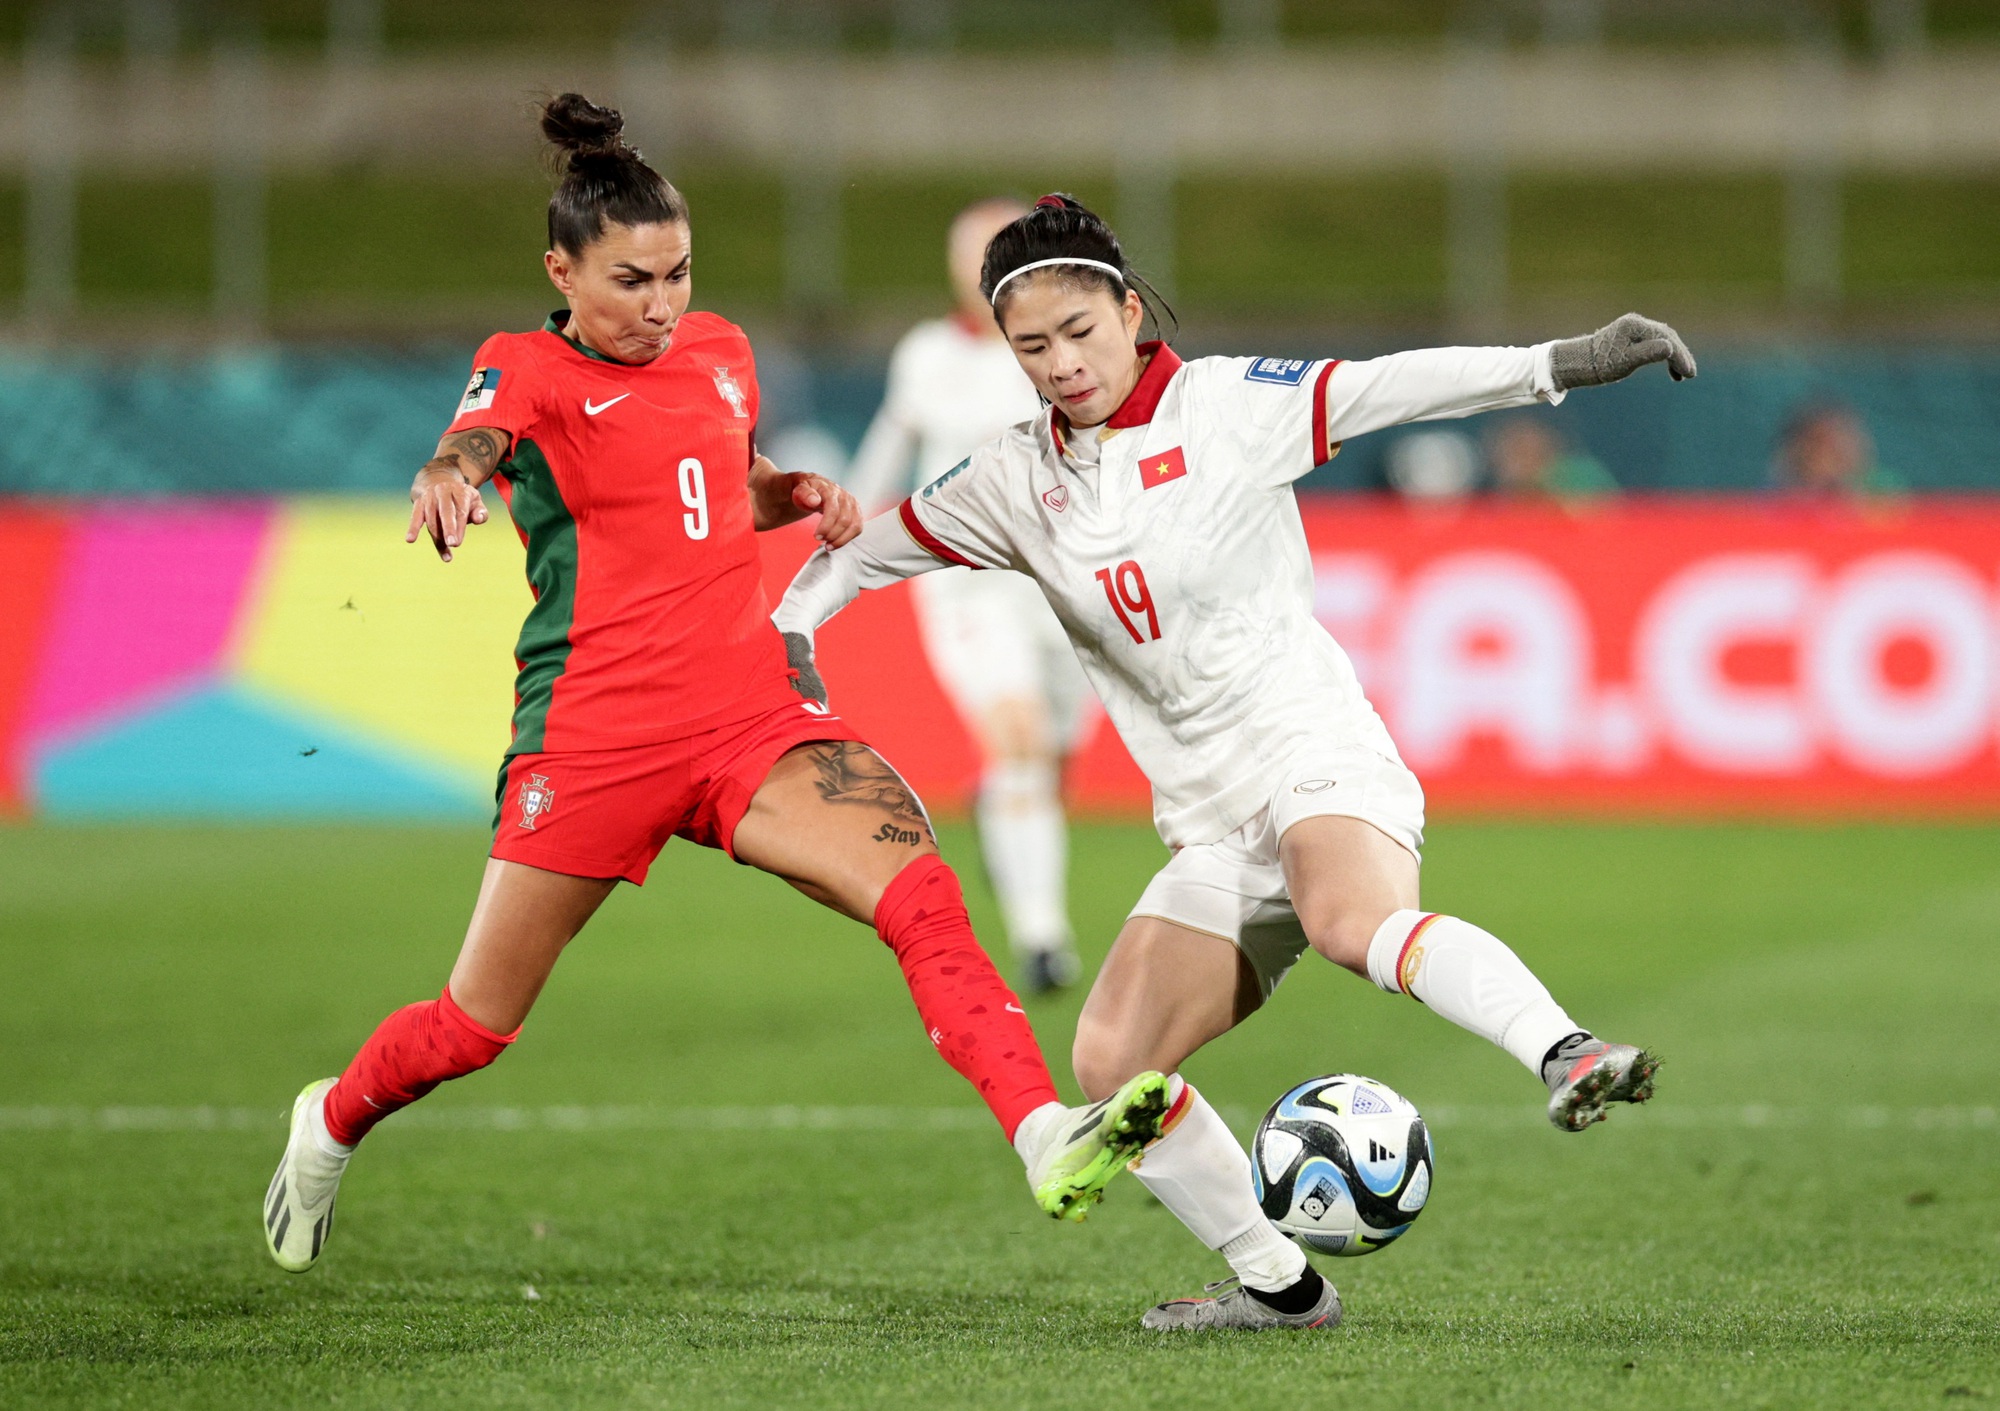 Thanh Nhã kiểm soát bóng trong trận gặp đội tuyển nữ Bồ Đào Nha